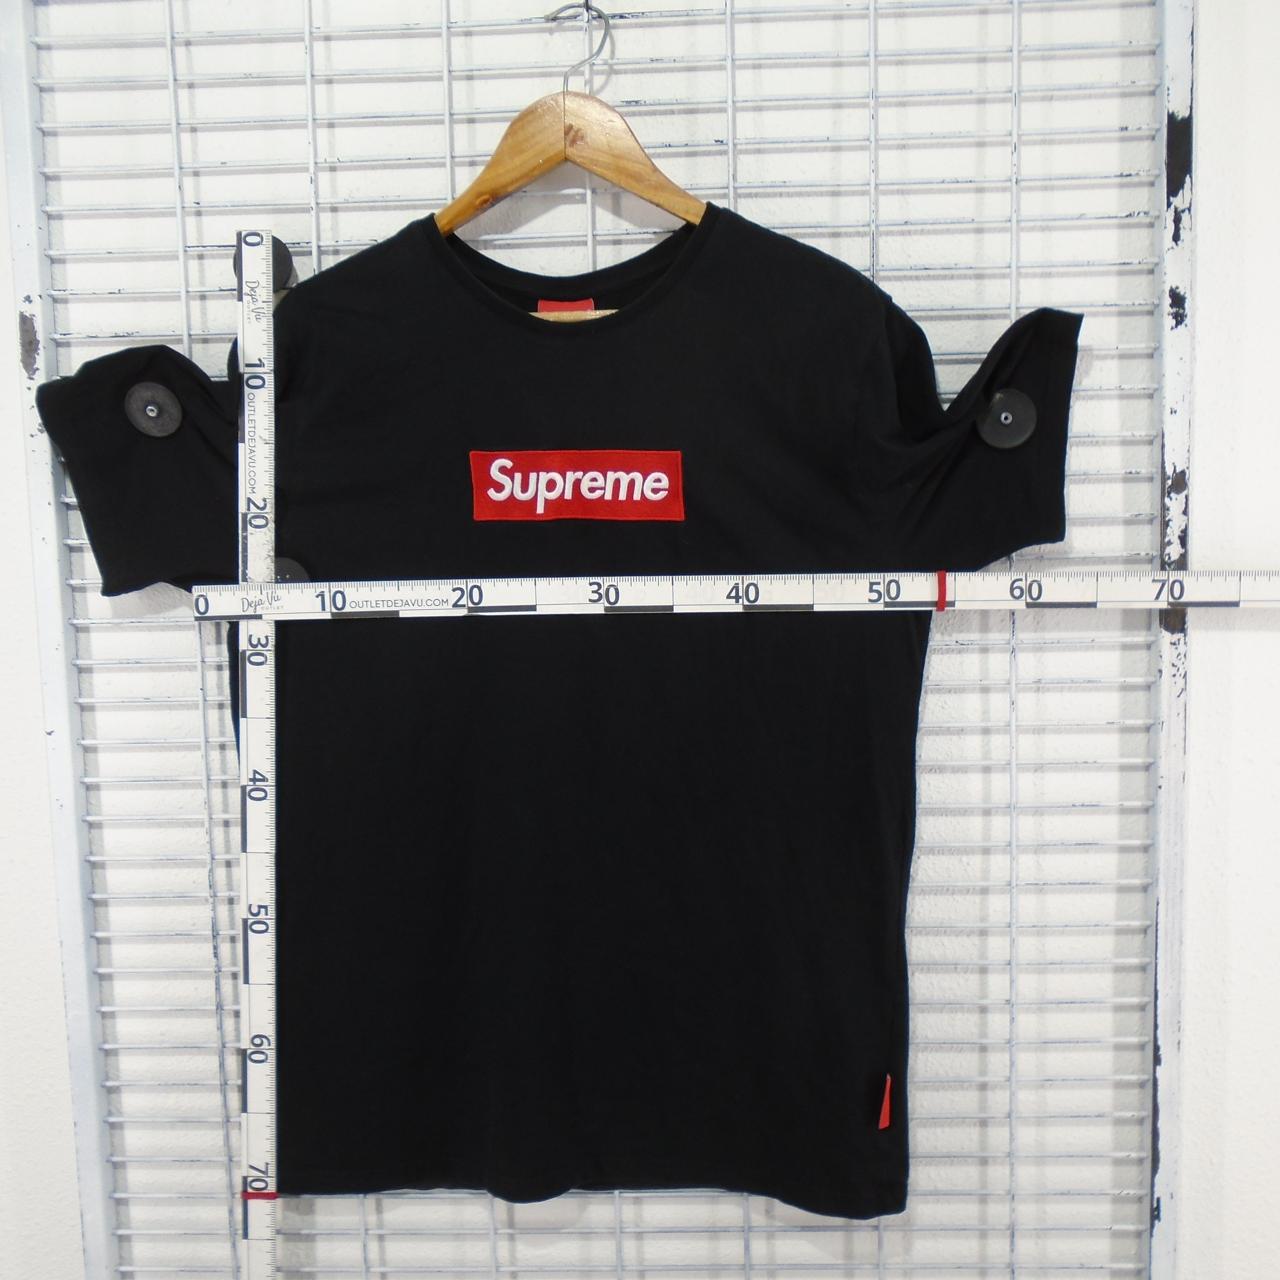 Men's T-Shirt Supreme. Black. L. Used. Good